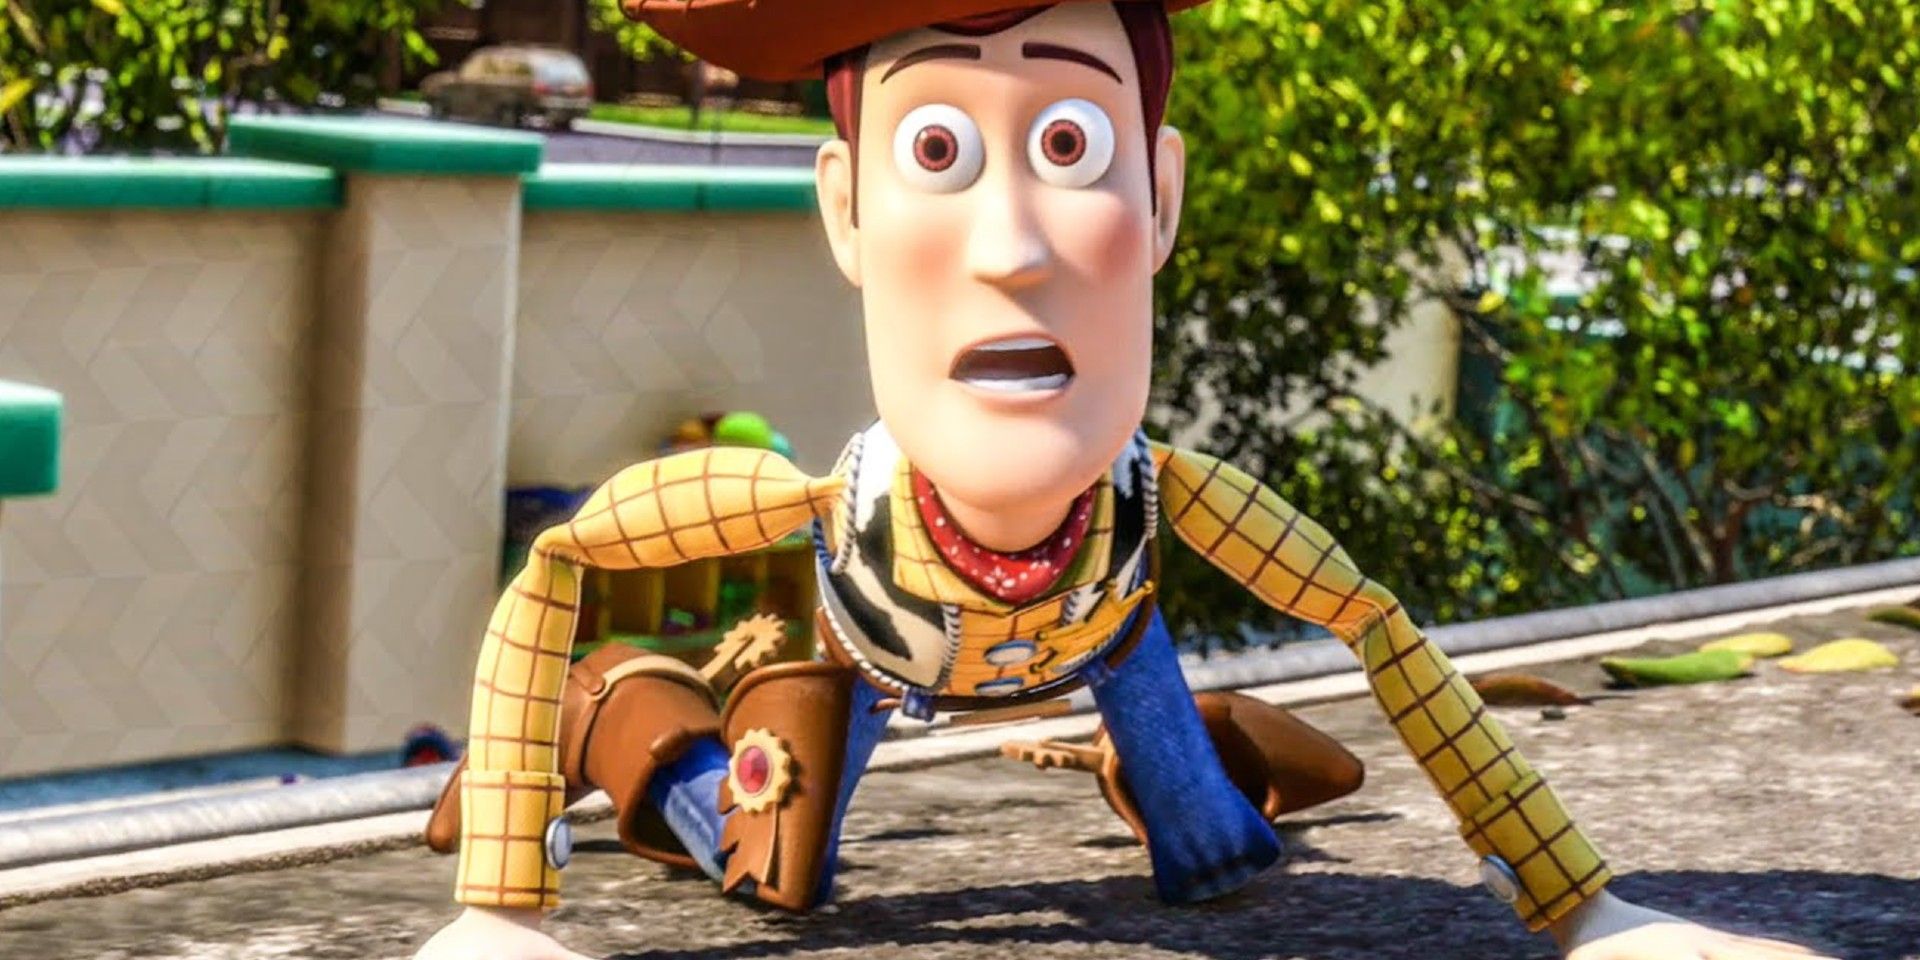 El video falso de Toy Story BTS imagina si los personajes estuvieran en el set durante la filmación